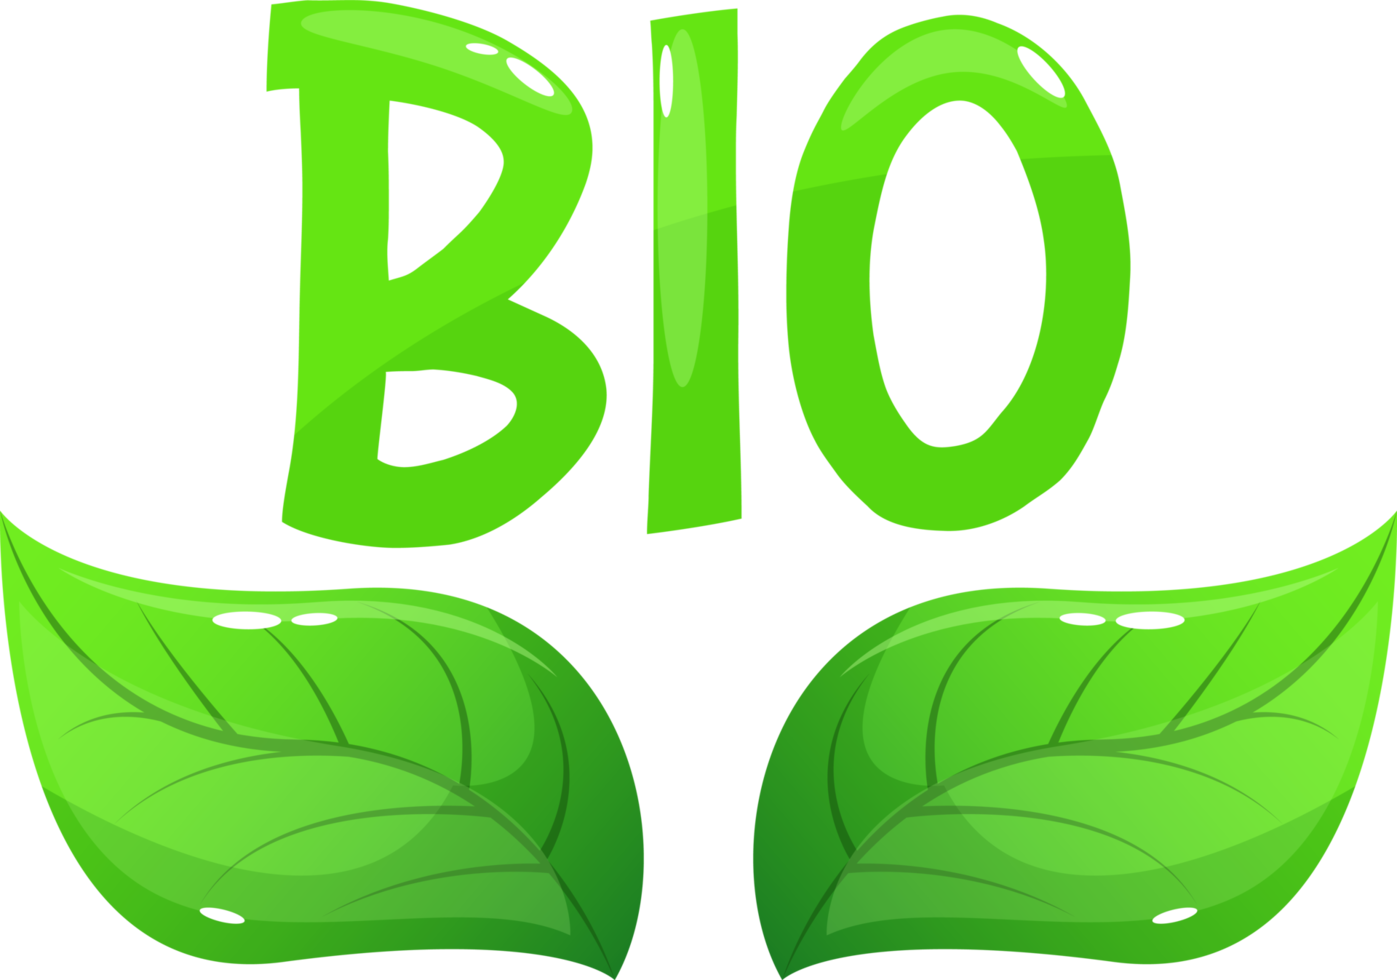 Bio emblem clipart design illustration png